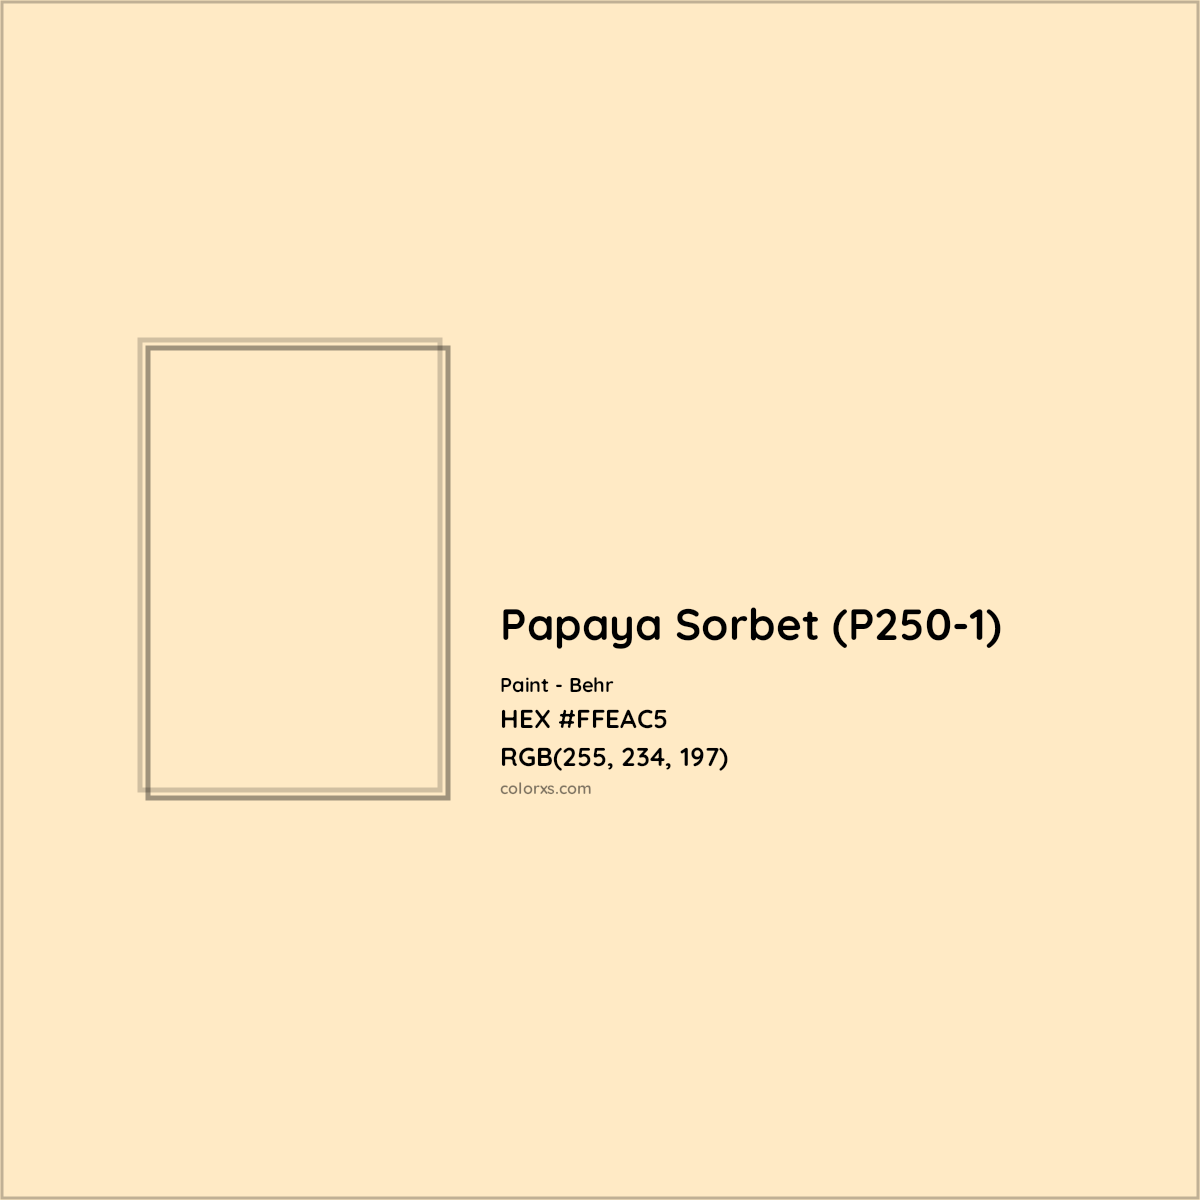 HEX #FFEAC5 Papaya Sorbet (P250-1) Paint Behr - Color Code